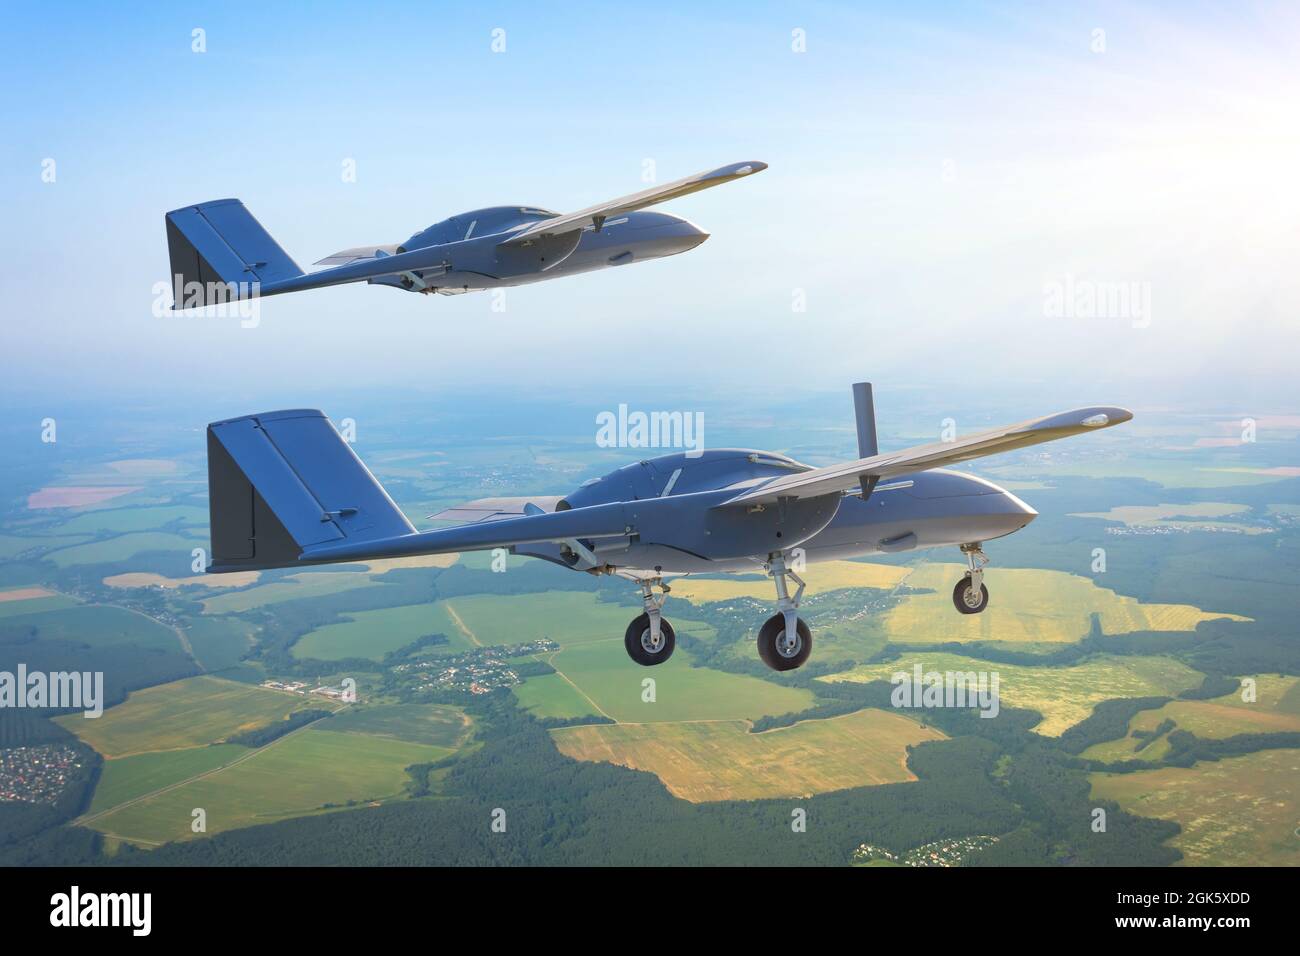 Une paire de drones militaires sans pilote avec des engins d'atterrissage étendus survole le territoire aérien de patrouille à basse altitude Banque D'Images